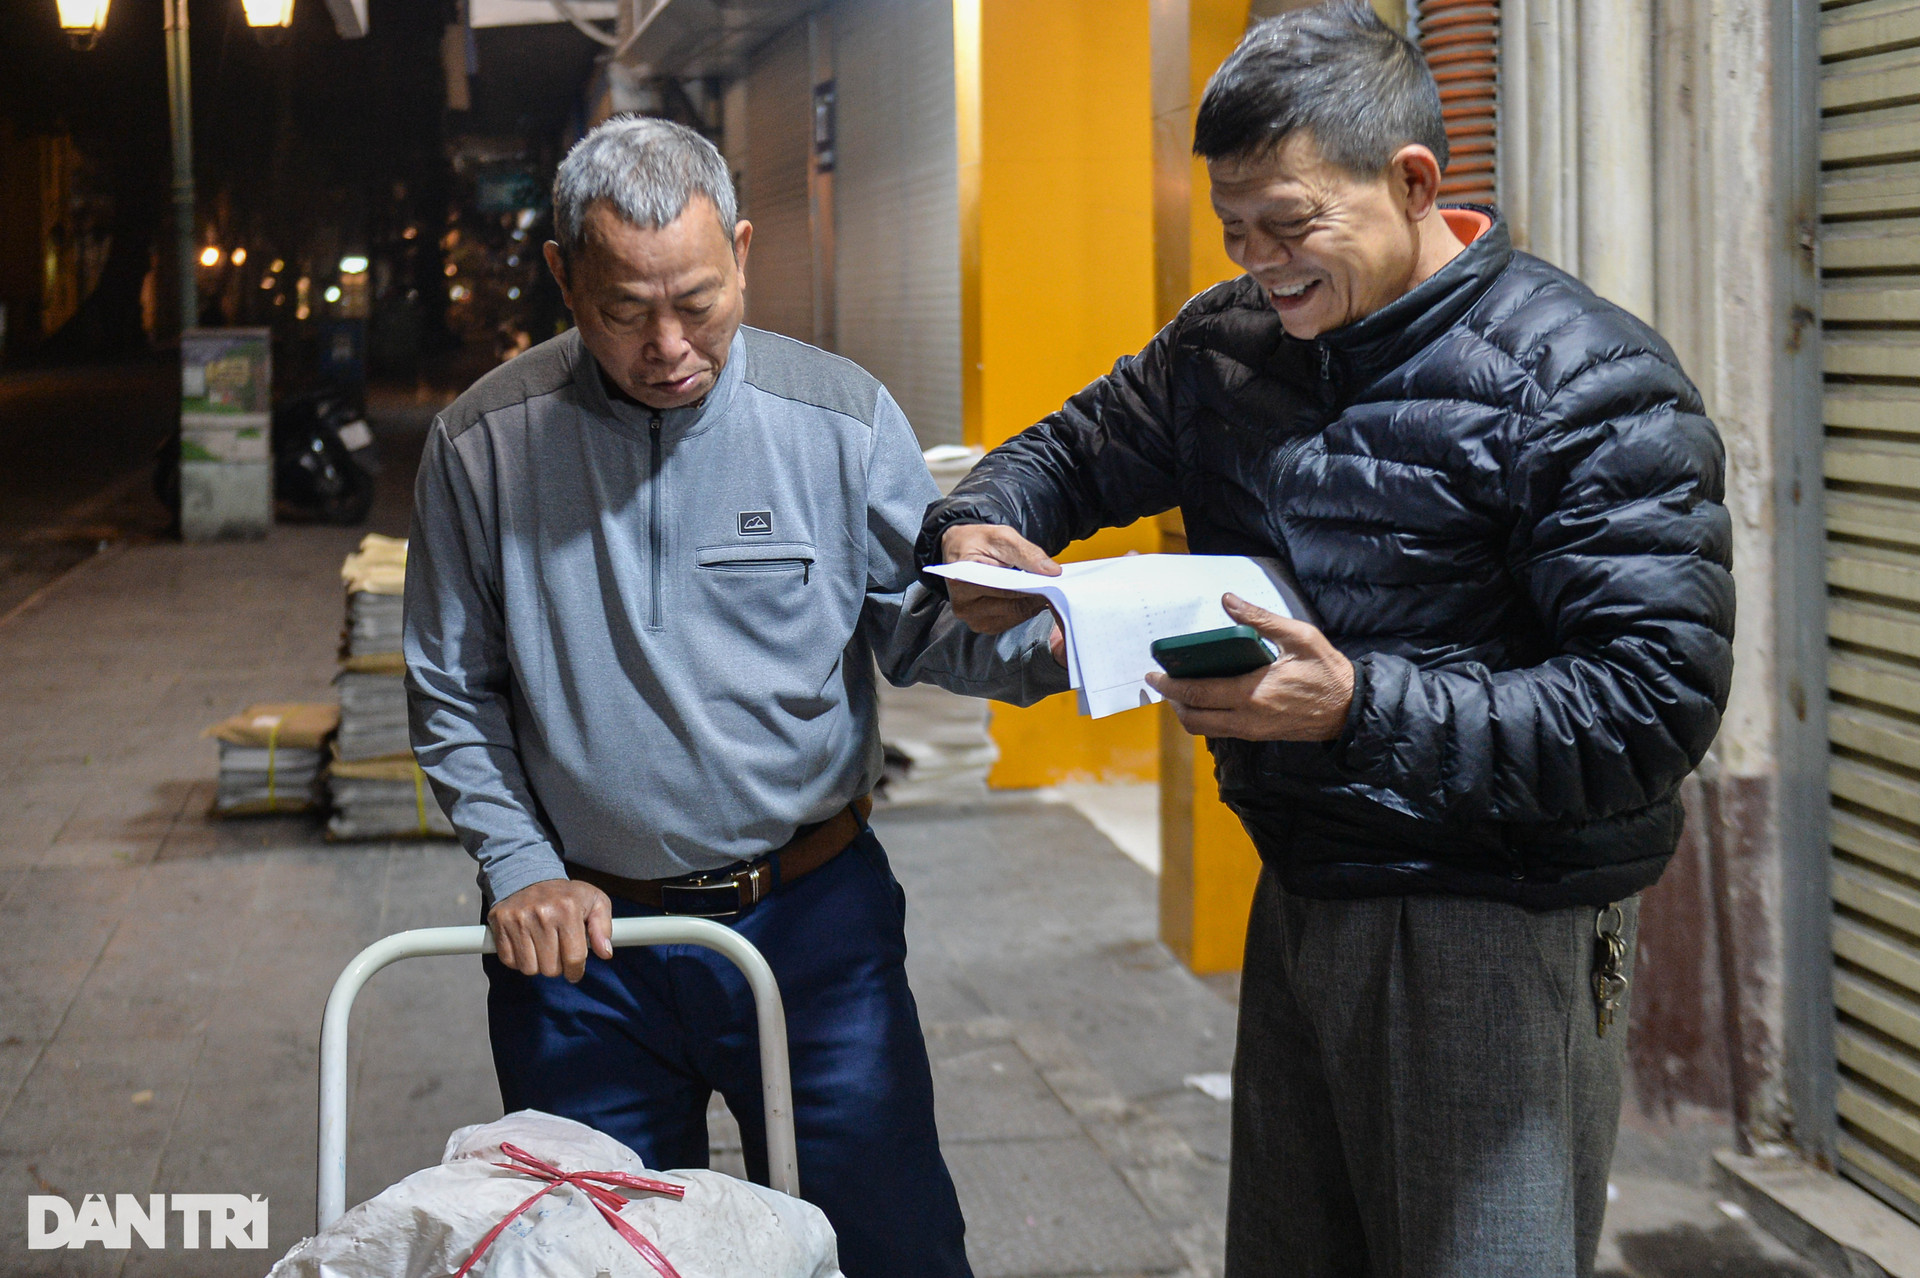 Chợ báo giấy độc nhất Hà Nội, họp từ tờ mờ sáng - 7